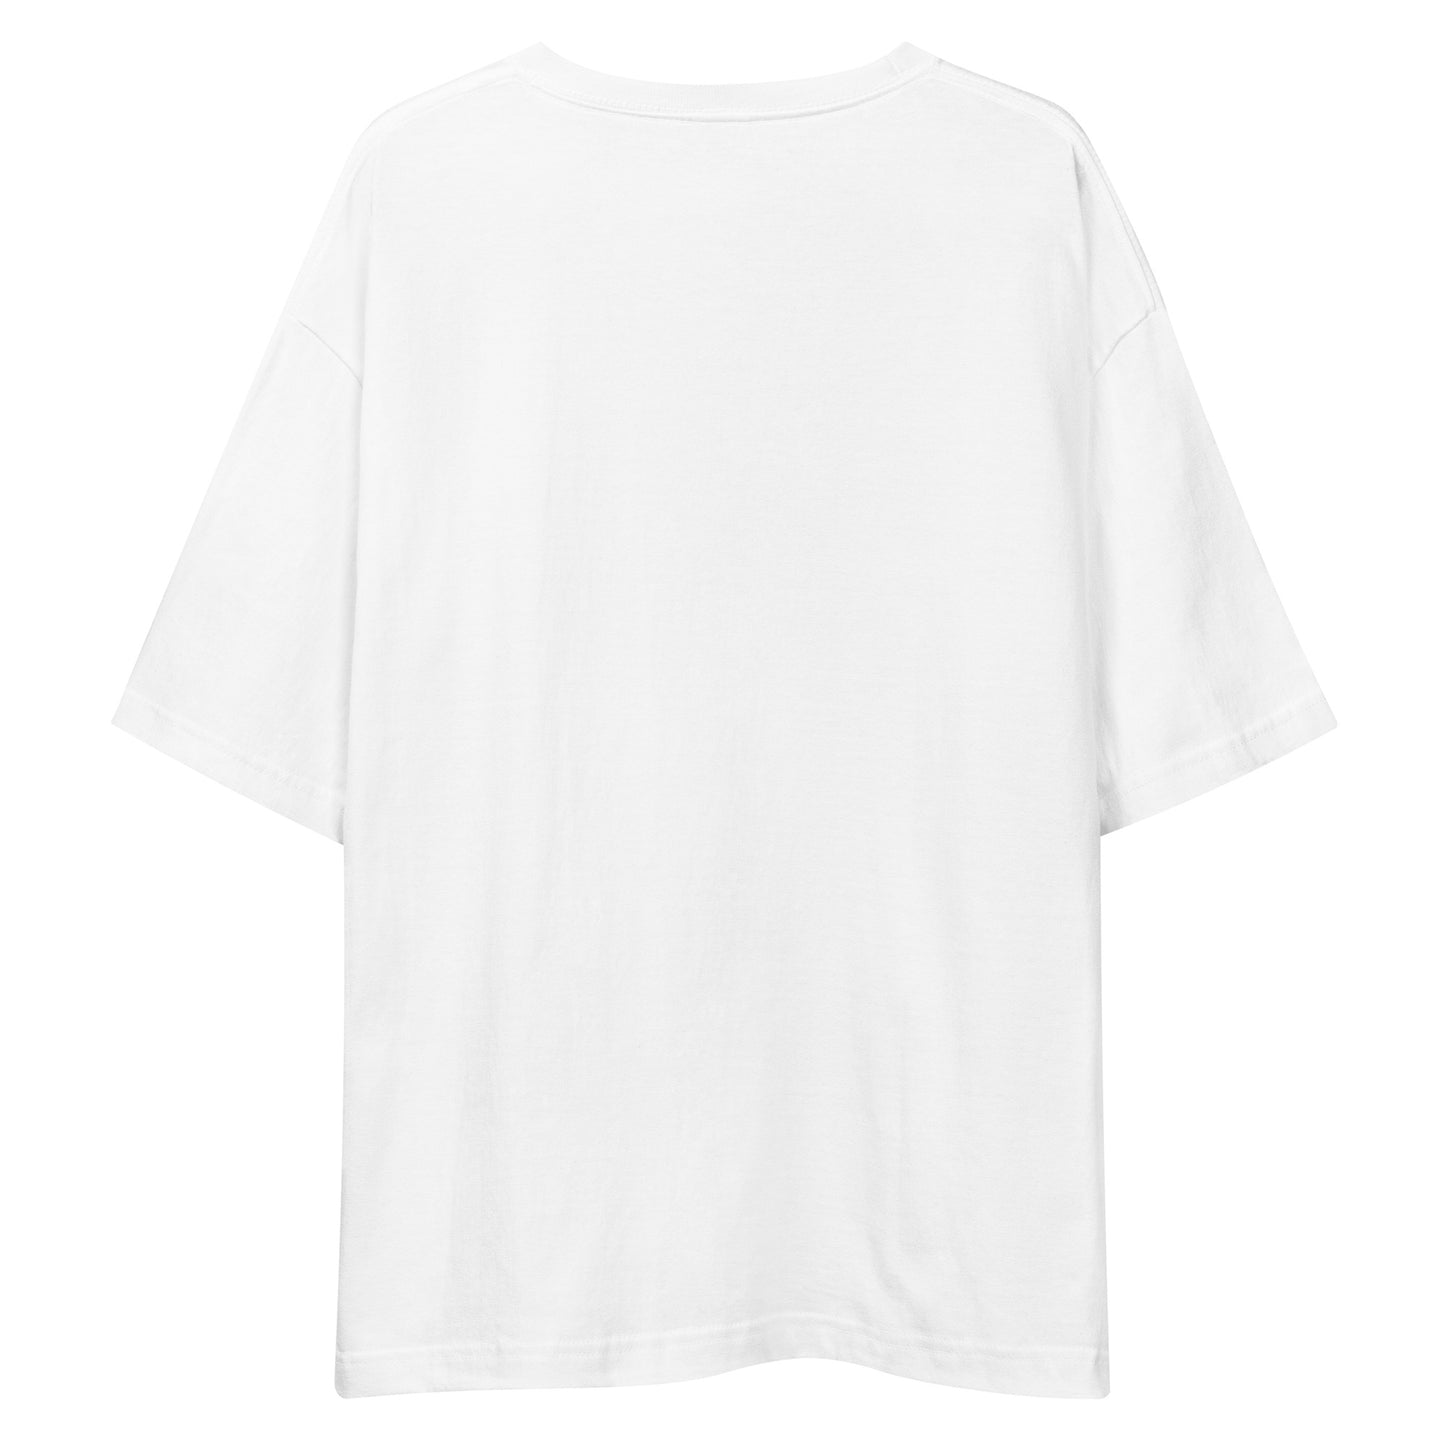 E246 - T-shirt/Siluet besar (MX menang/wanita : Putih/Hitam)